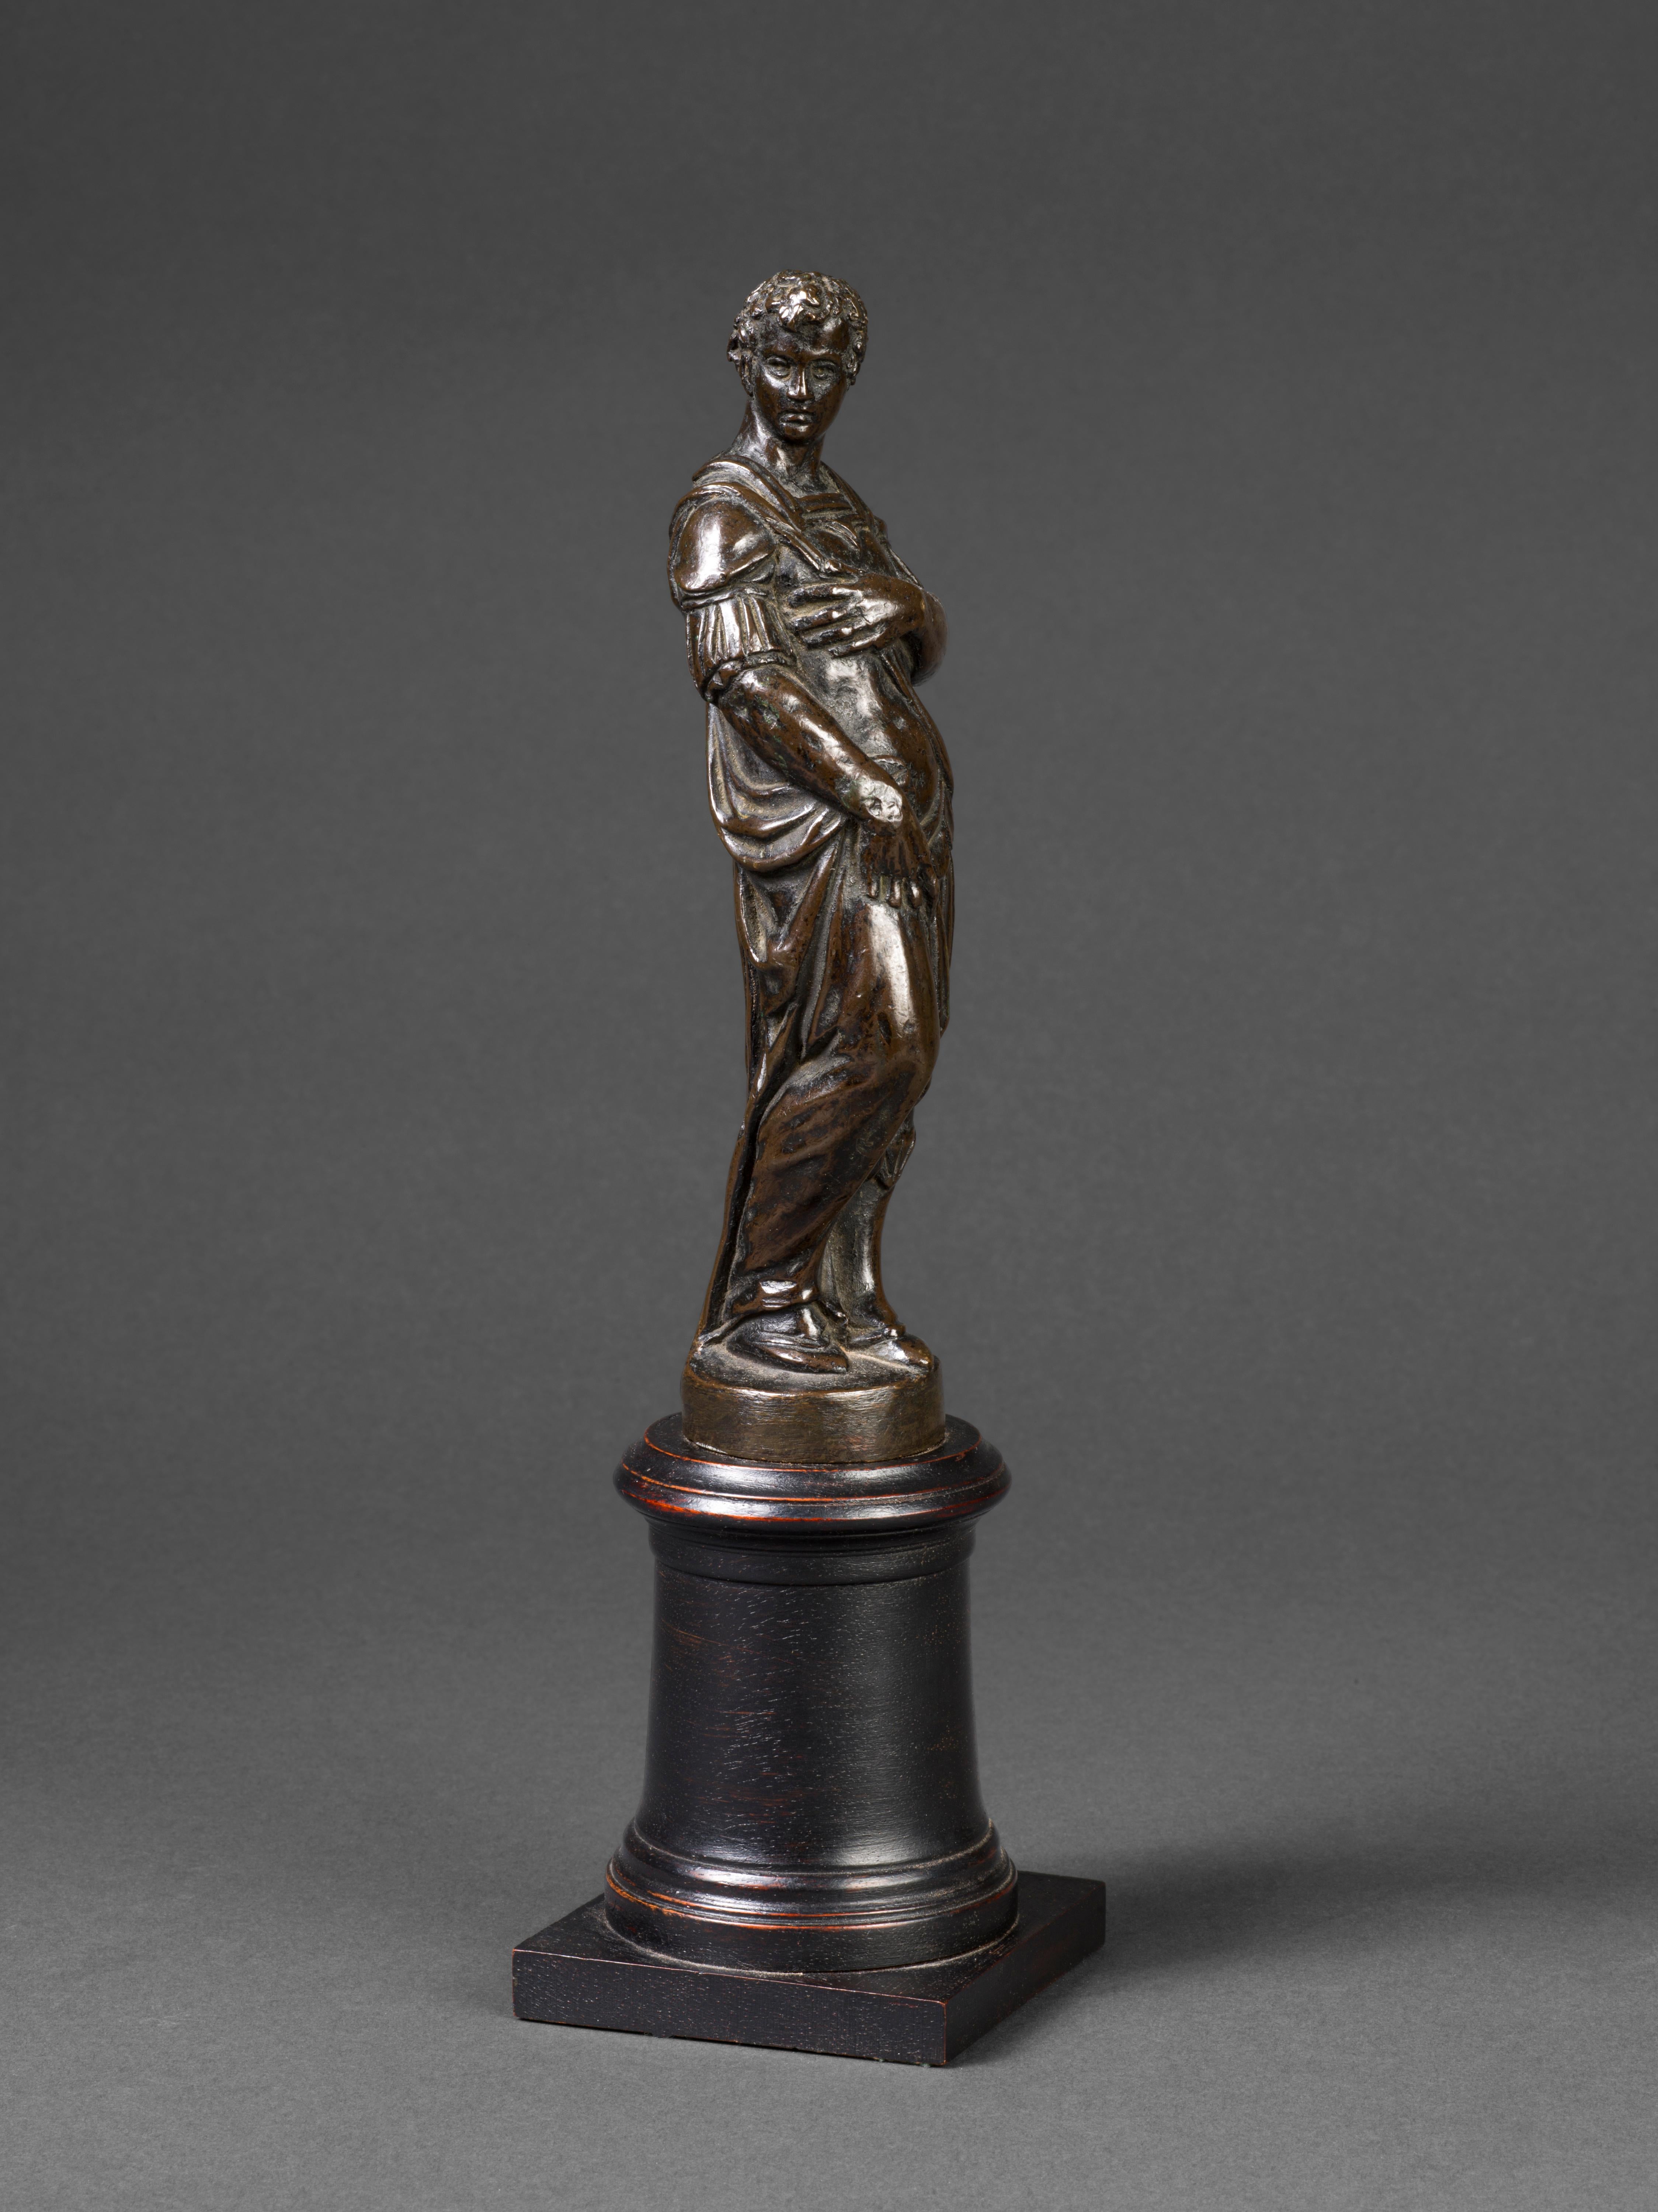  Andrea di Alessandri, called Il Bresciano Figurative Sculpture - 16th Century Venetian bronze sculpture of a Young Man in Armour